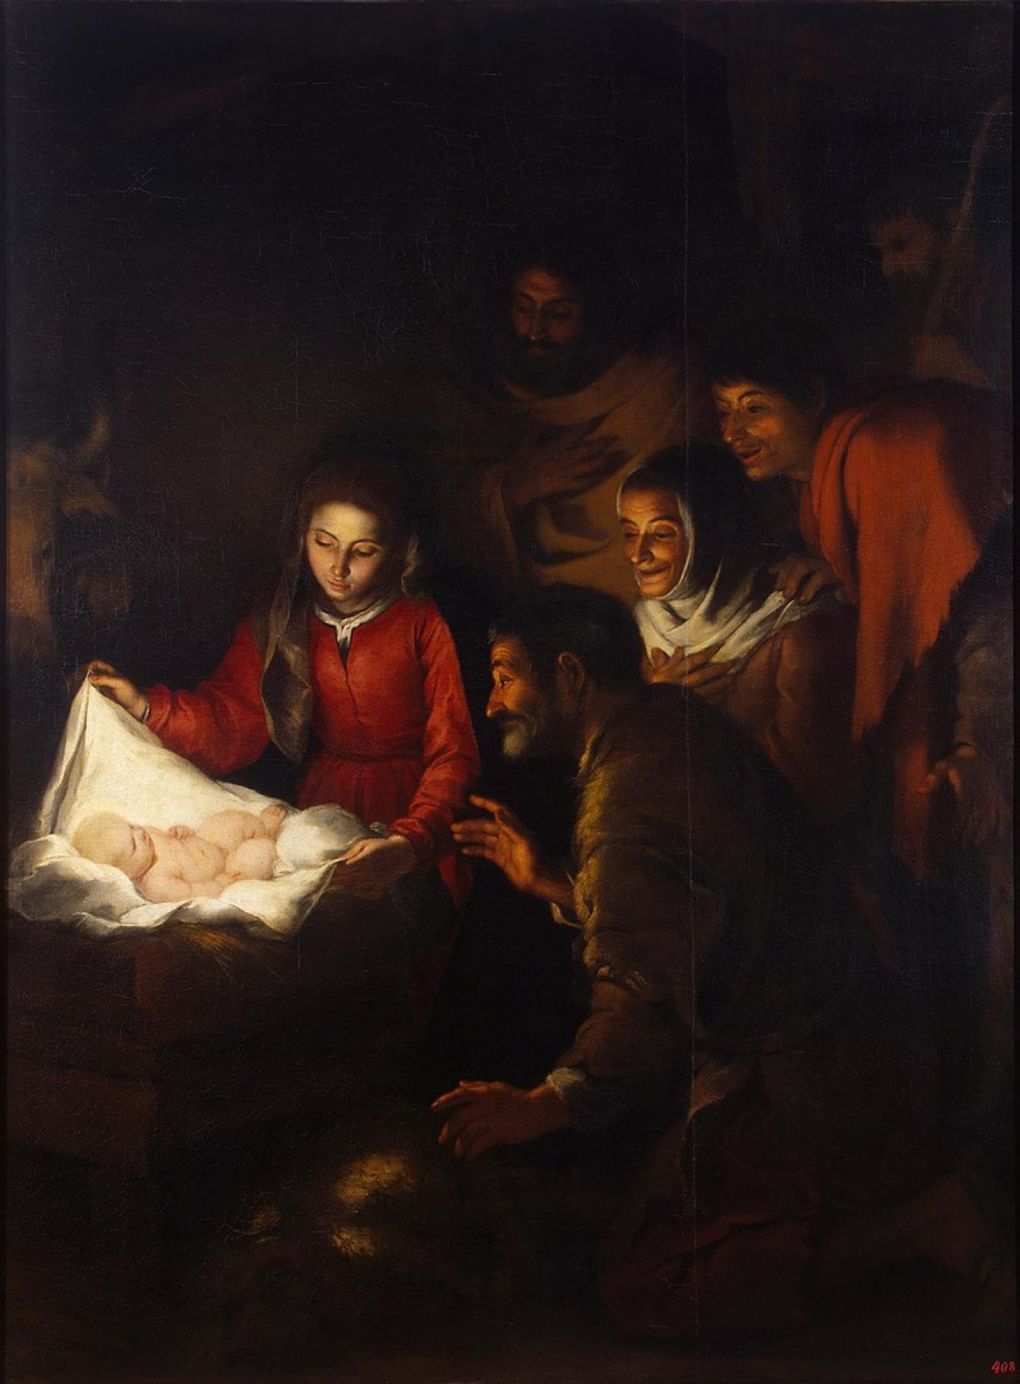 Бартоломе Эстебан Мурильо «Поклонение пастухов» (1646–1650 годы, Эрмитаж)